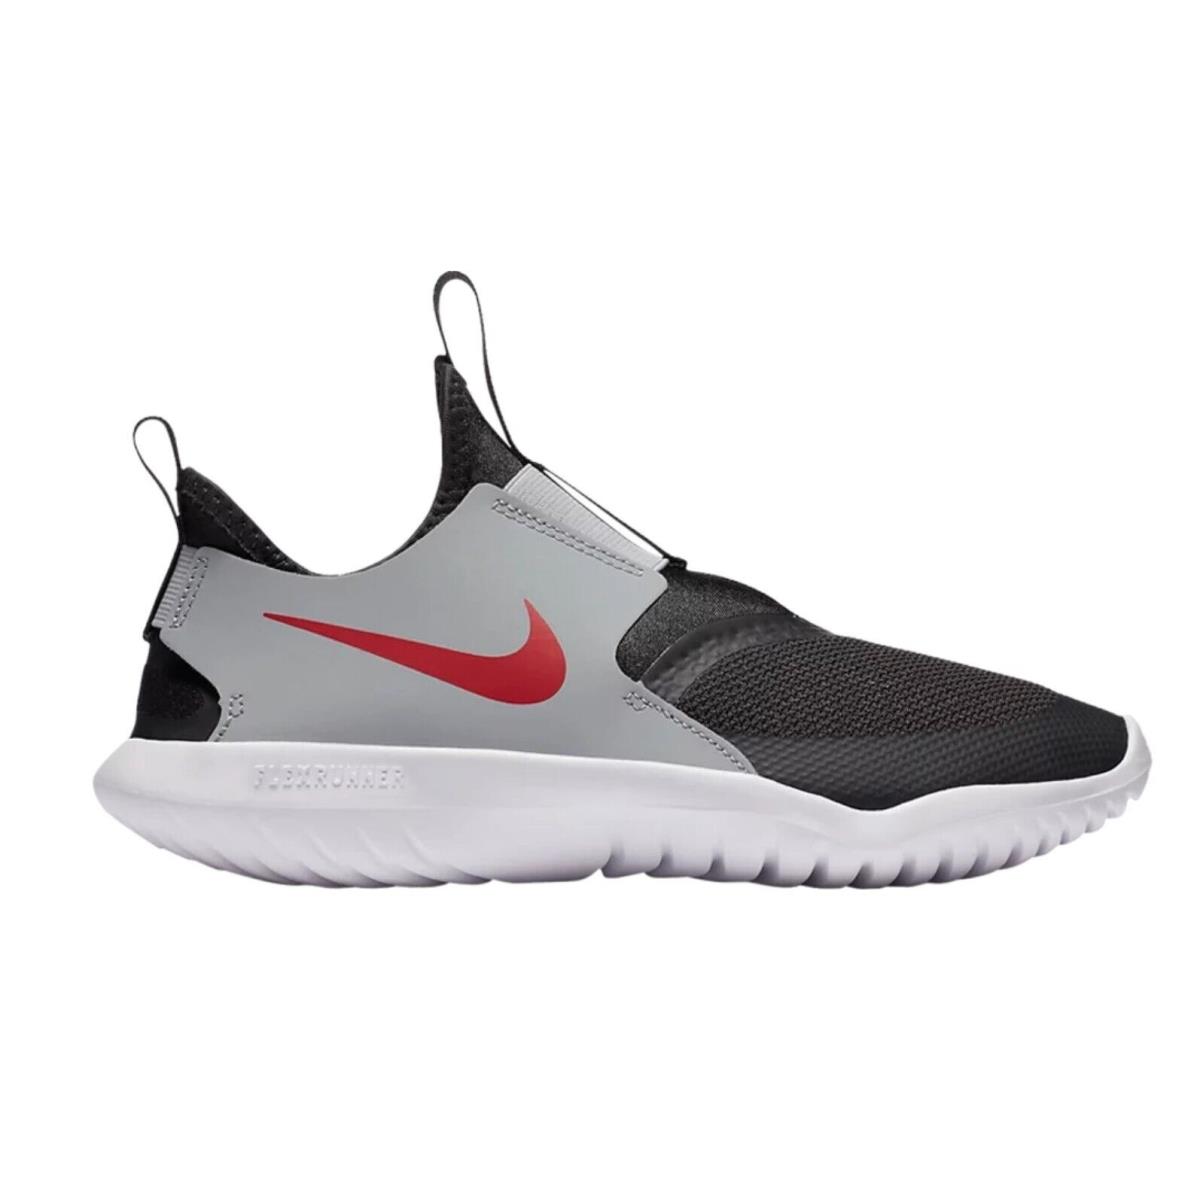 Nike Flex Runner GS Big Kids Size 6.5 - AT4662-013 Dark Smoke Grey Red Shoes